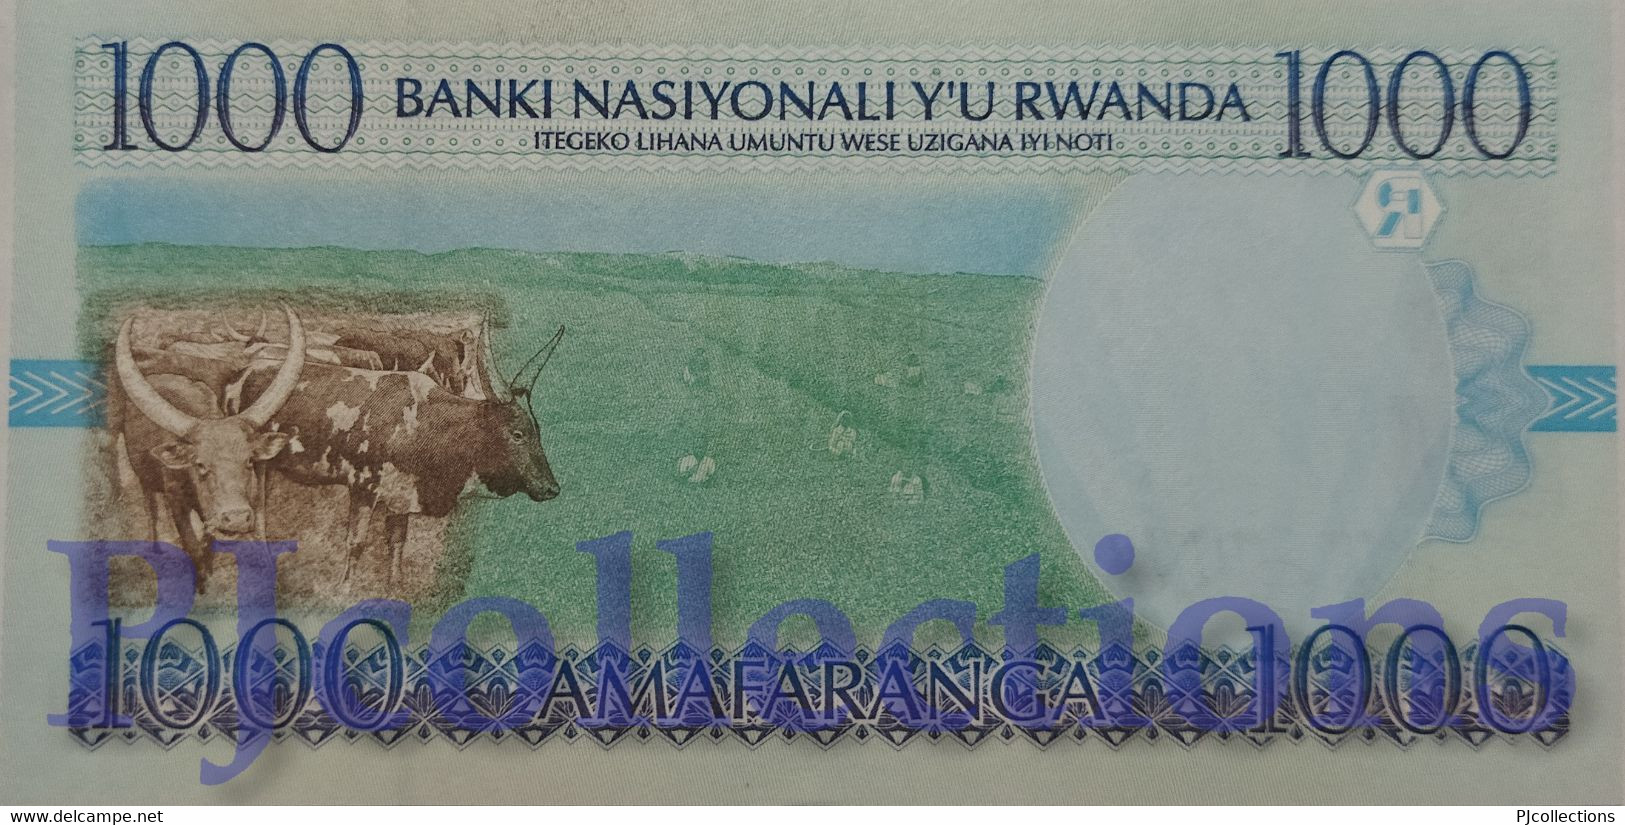 RWANDA 1000 FRANCS 1998 PICK 27a UNC - Rwanda